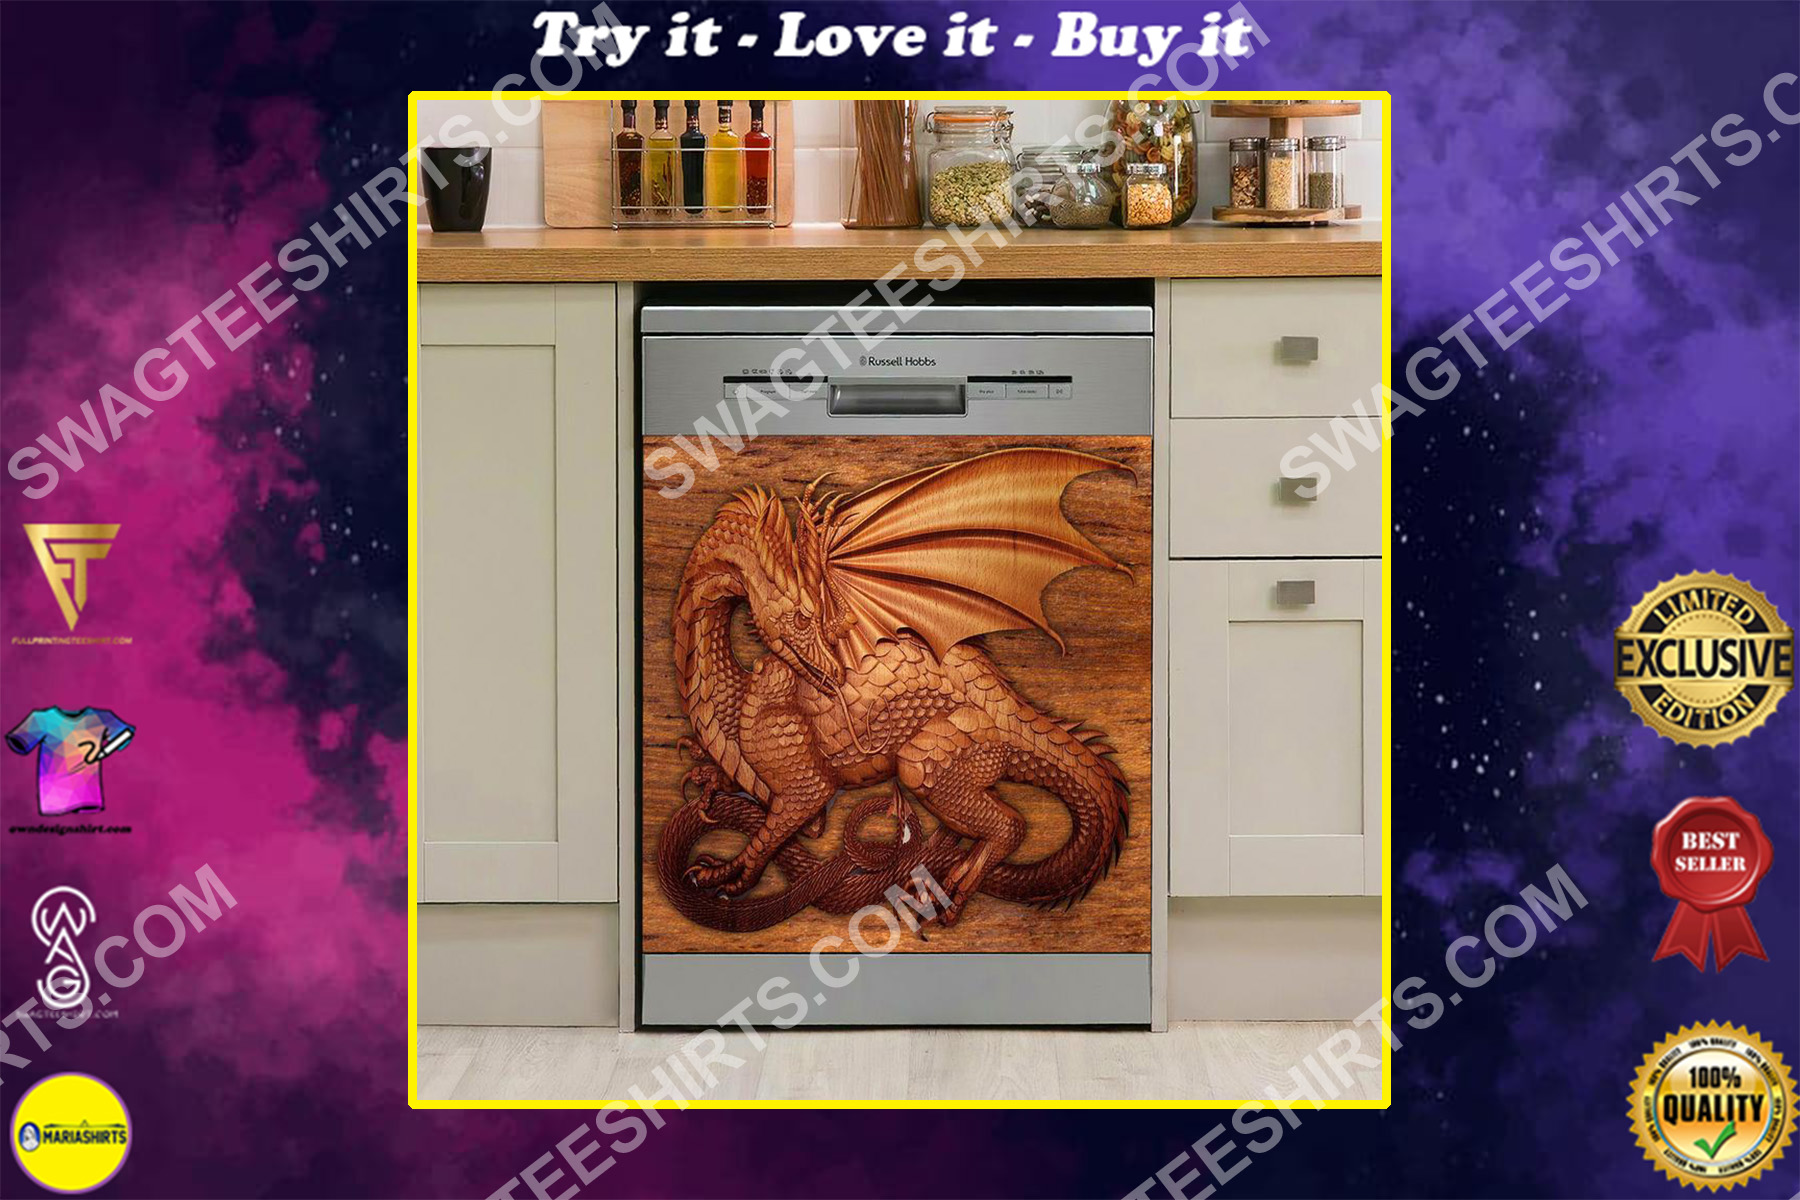 dragon vintage kitchen decorative dishwasher magnet cover